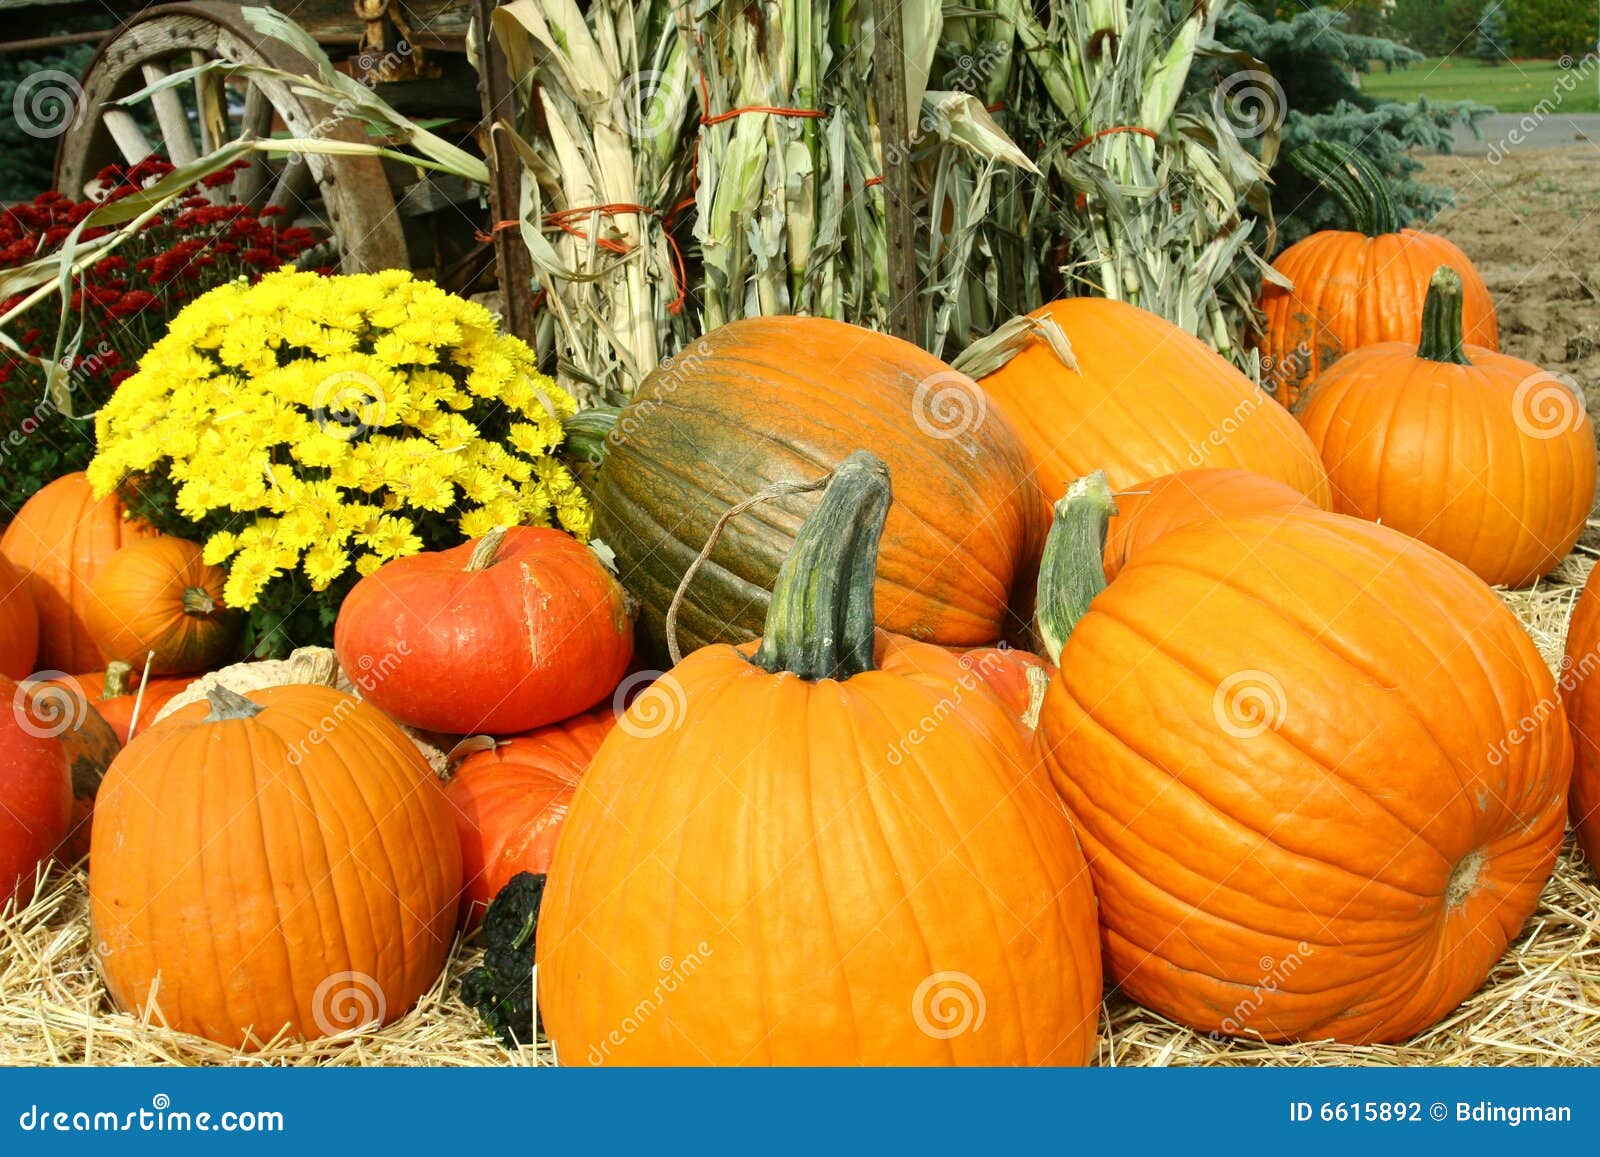 pumpkins, mums and cornstalks